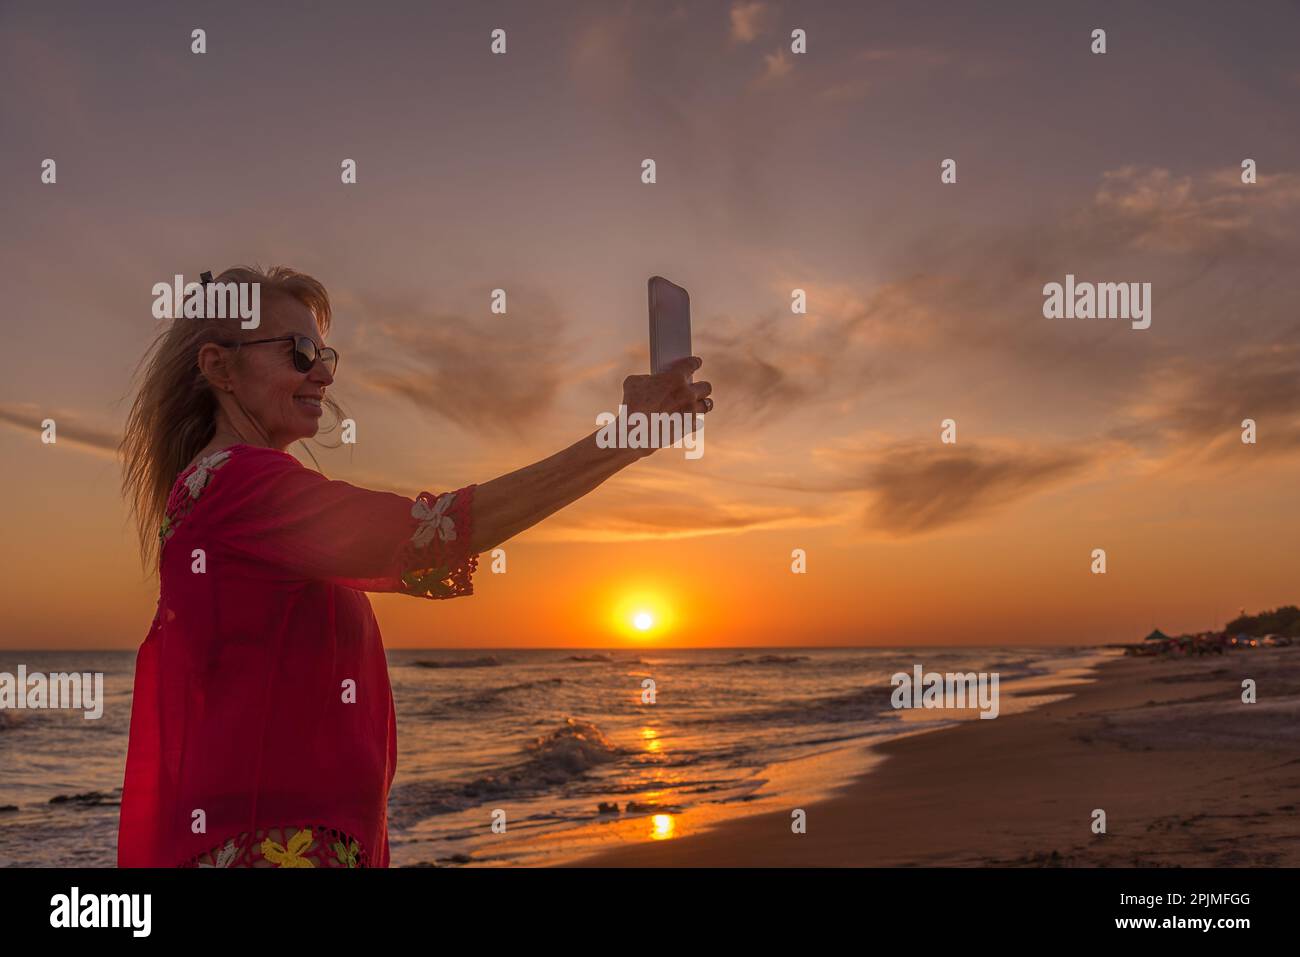 Seniorin lächelt, während sie bei Sonnenuntergang am Strand mit einem Handy Selfies macht. Sommer- und Urlaubskonzept. Stockfoto